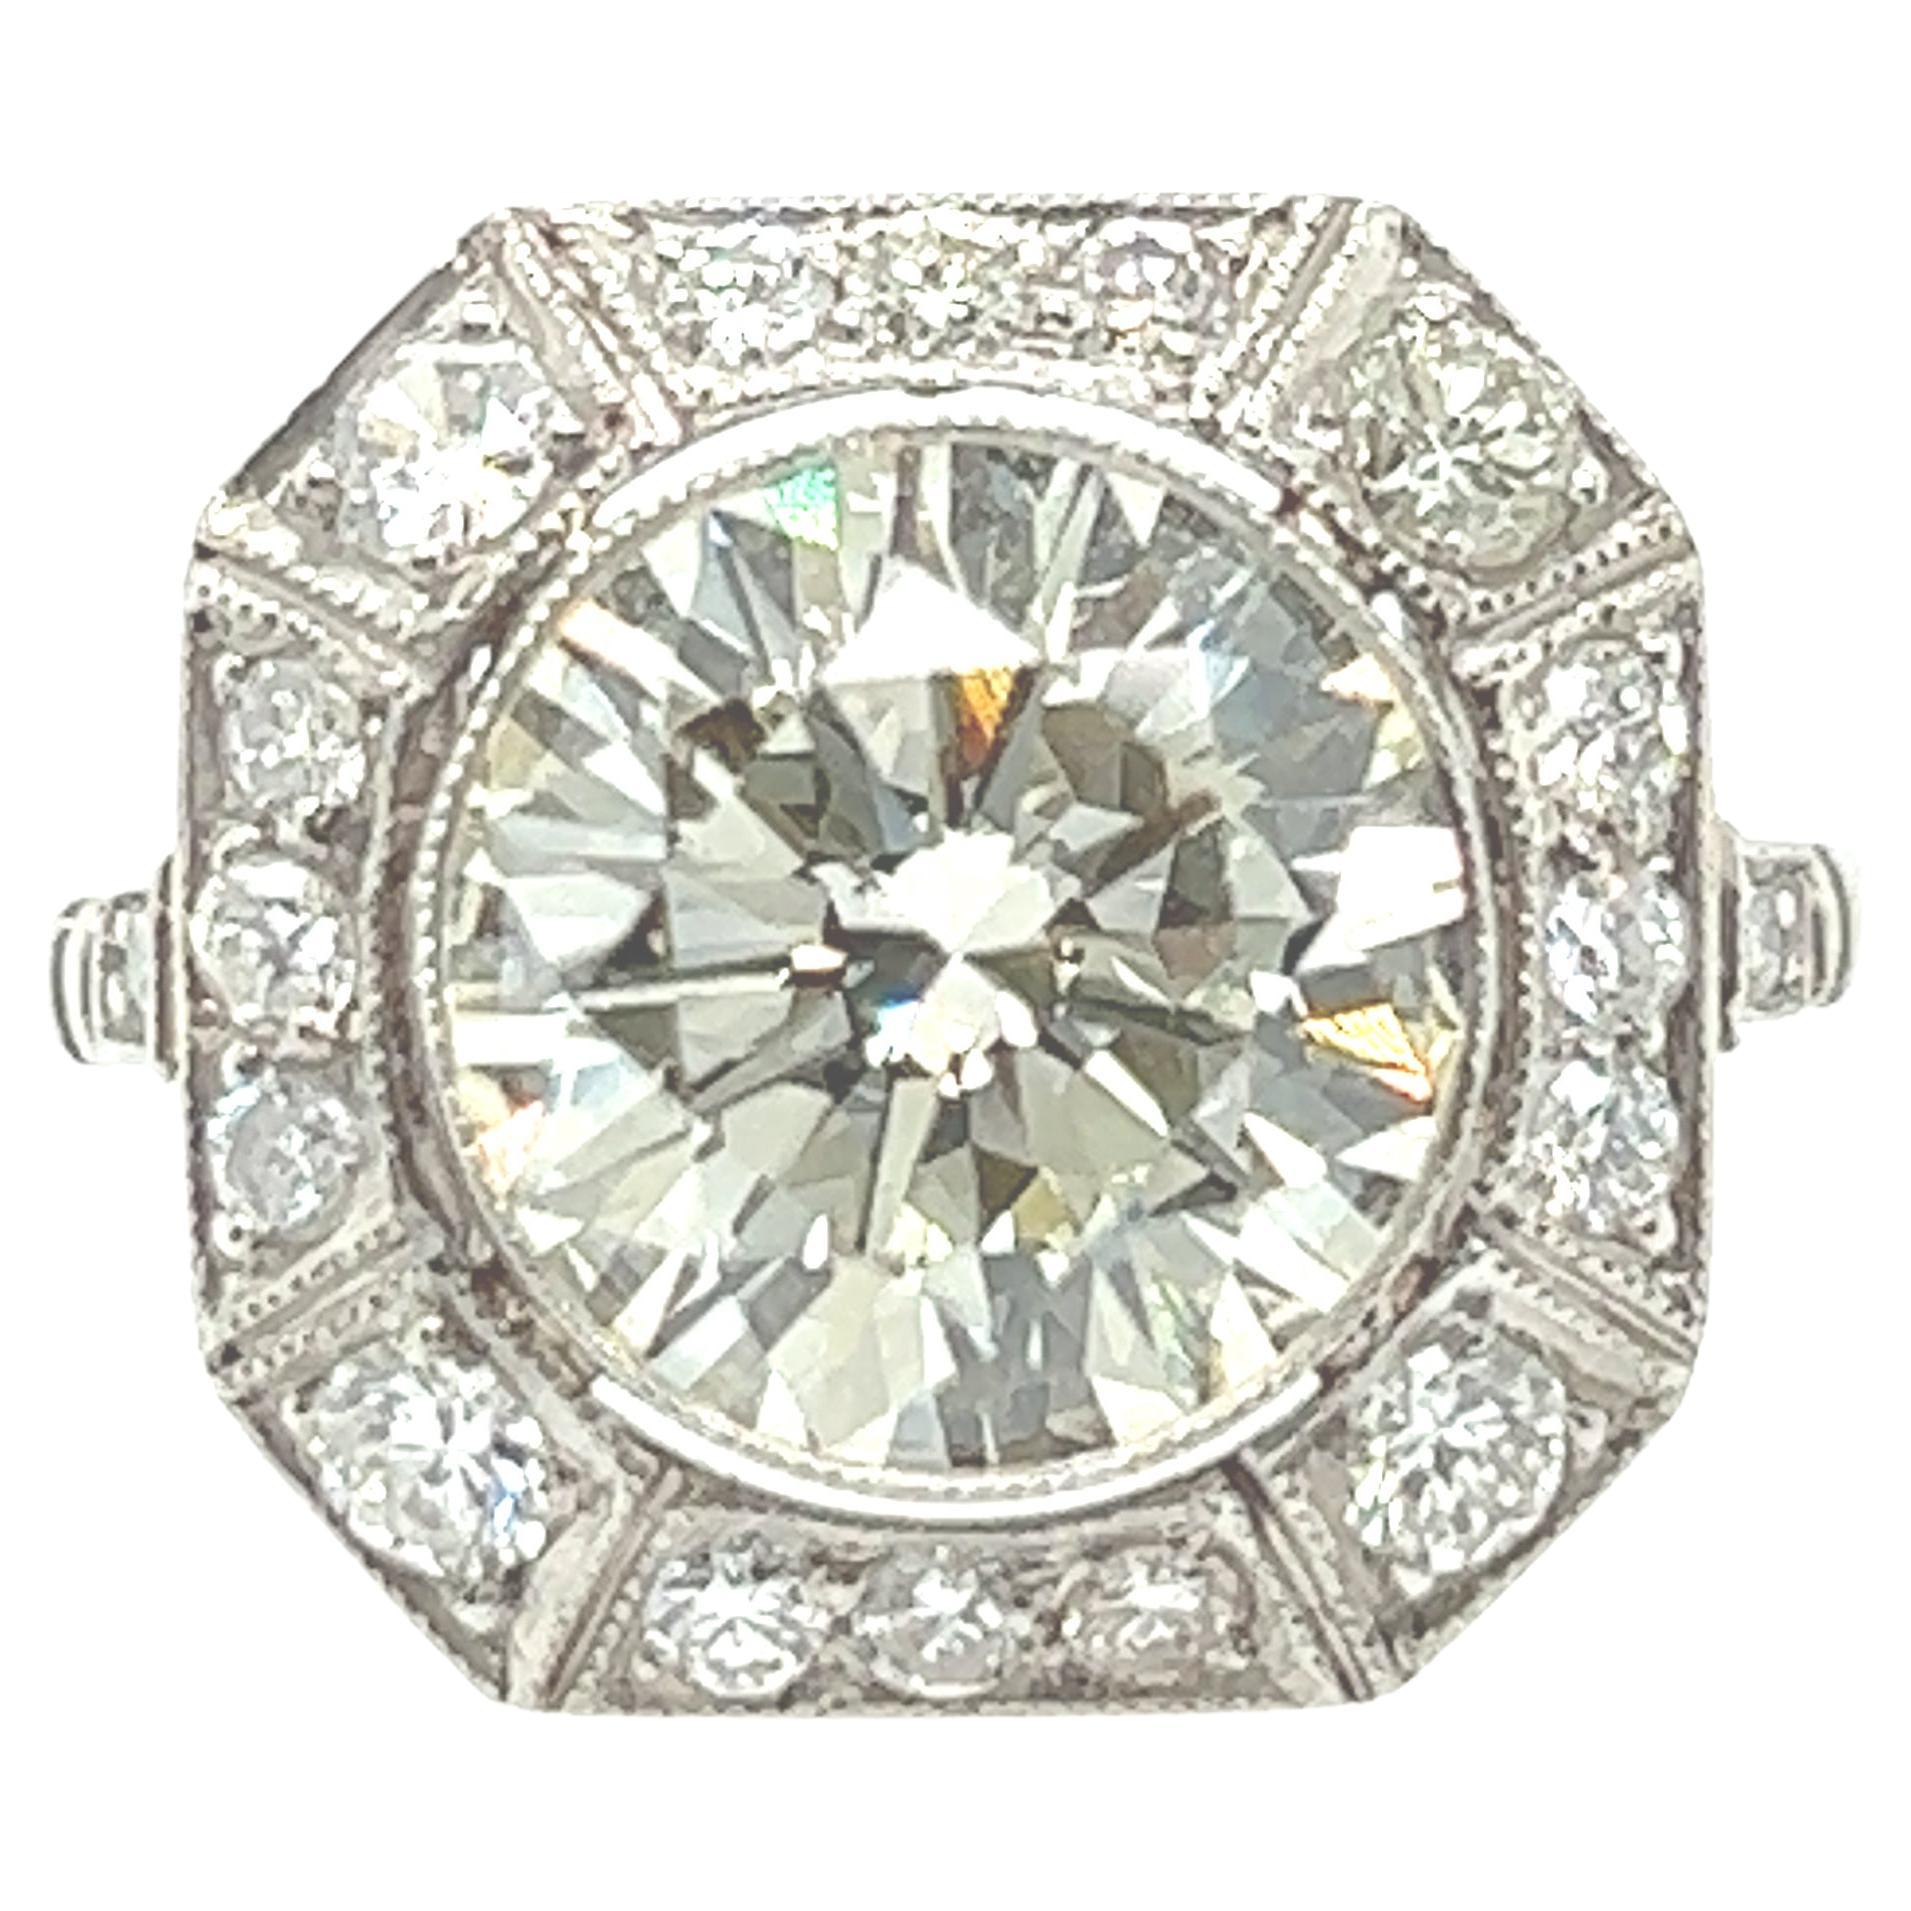 3.22 Carat Diamond Art Deco Style Ring